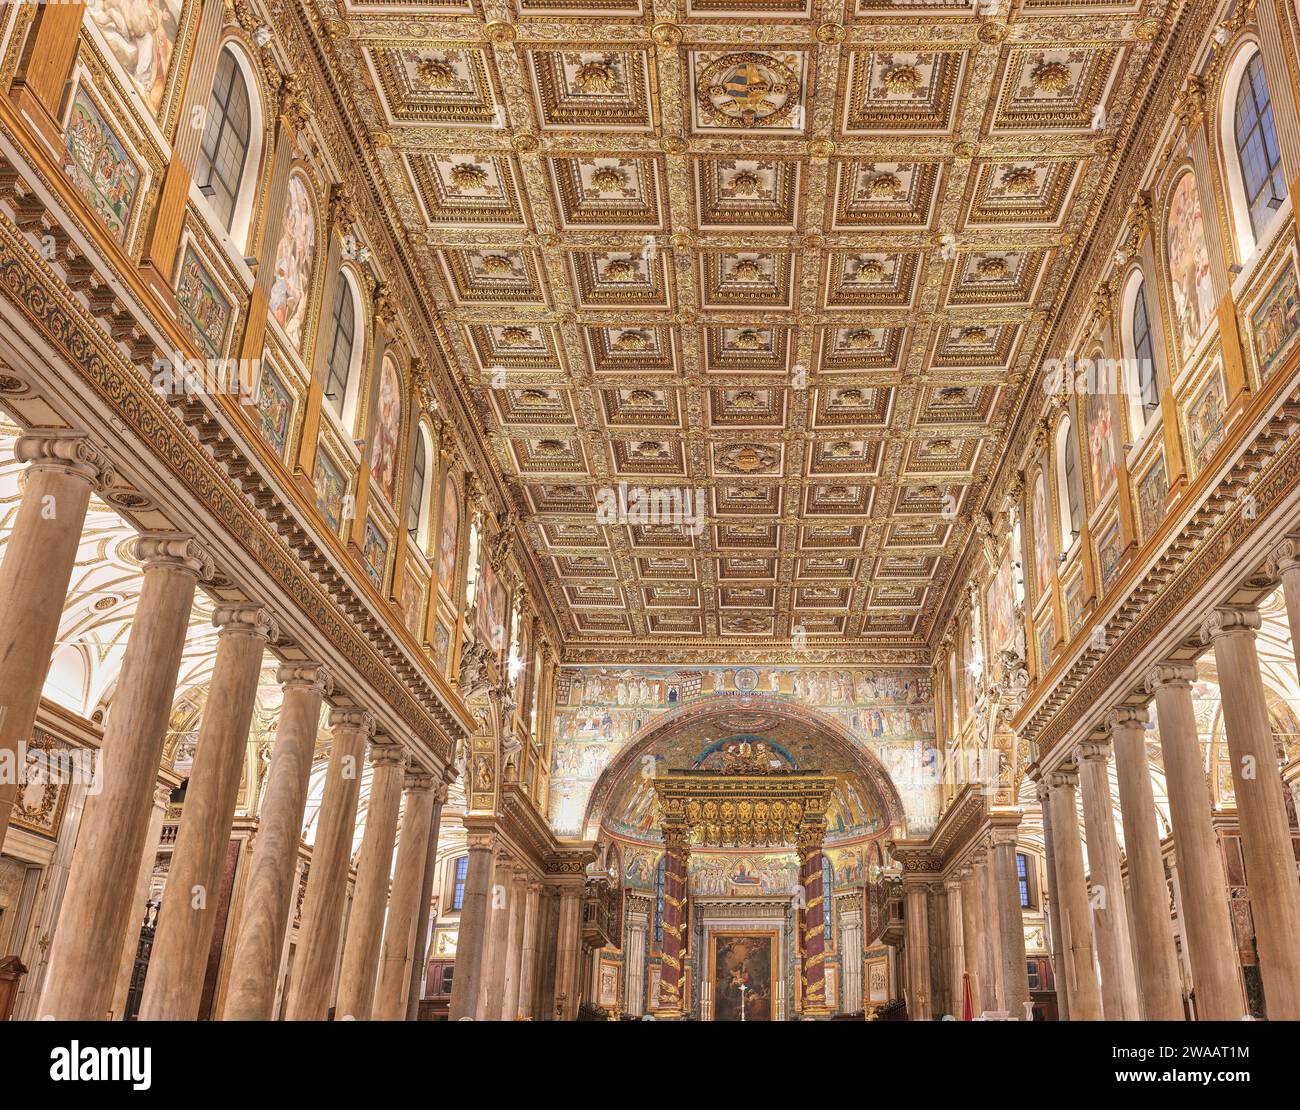 Plafond décoré dans la nef de la basilique papale de Santa Maria Maggiore (Sainte Marie majeure) dédié à la vierge Marie la mère de Jésus, Rome, il Banque D'Images